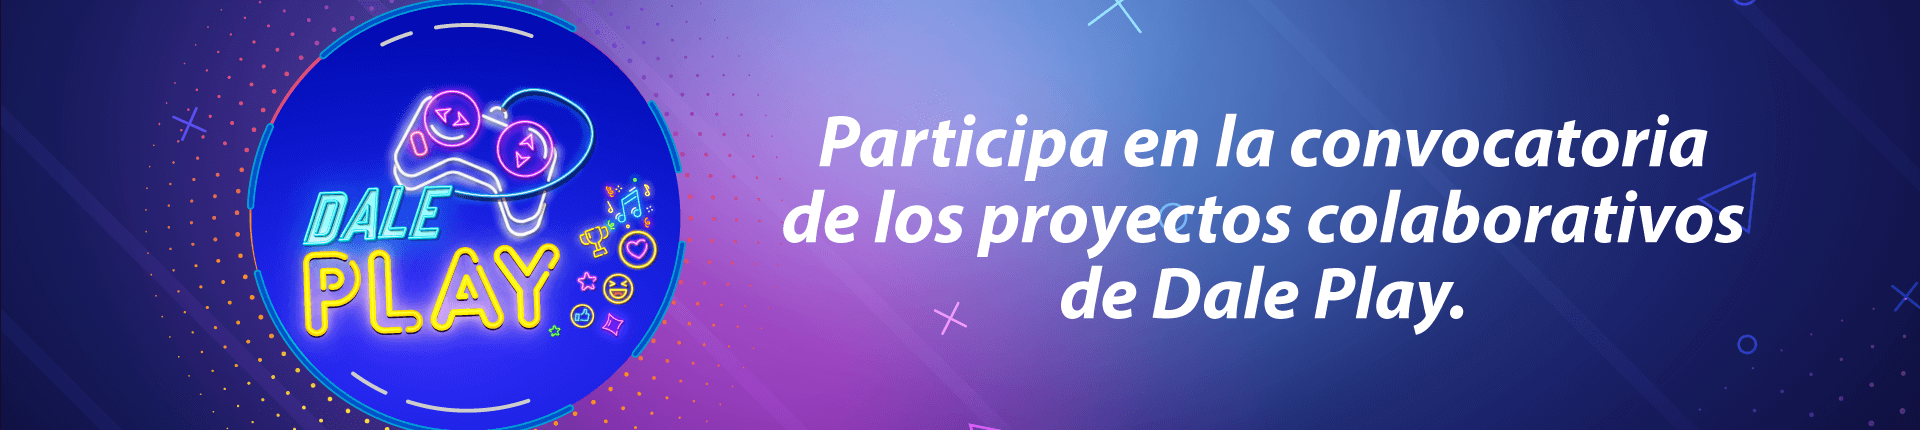 Proyectos-Colaborativos-Dale-Play